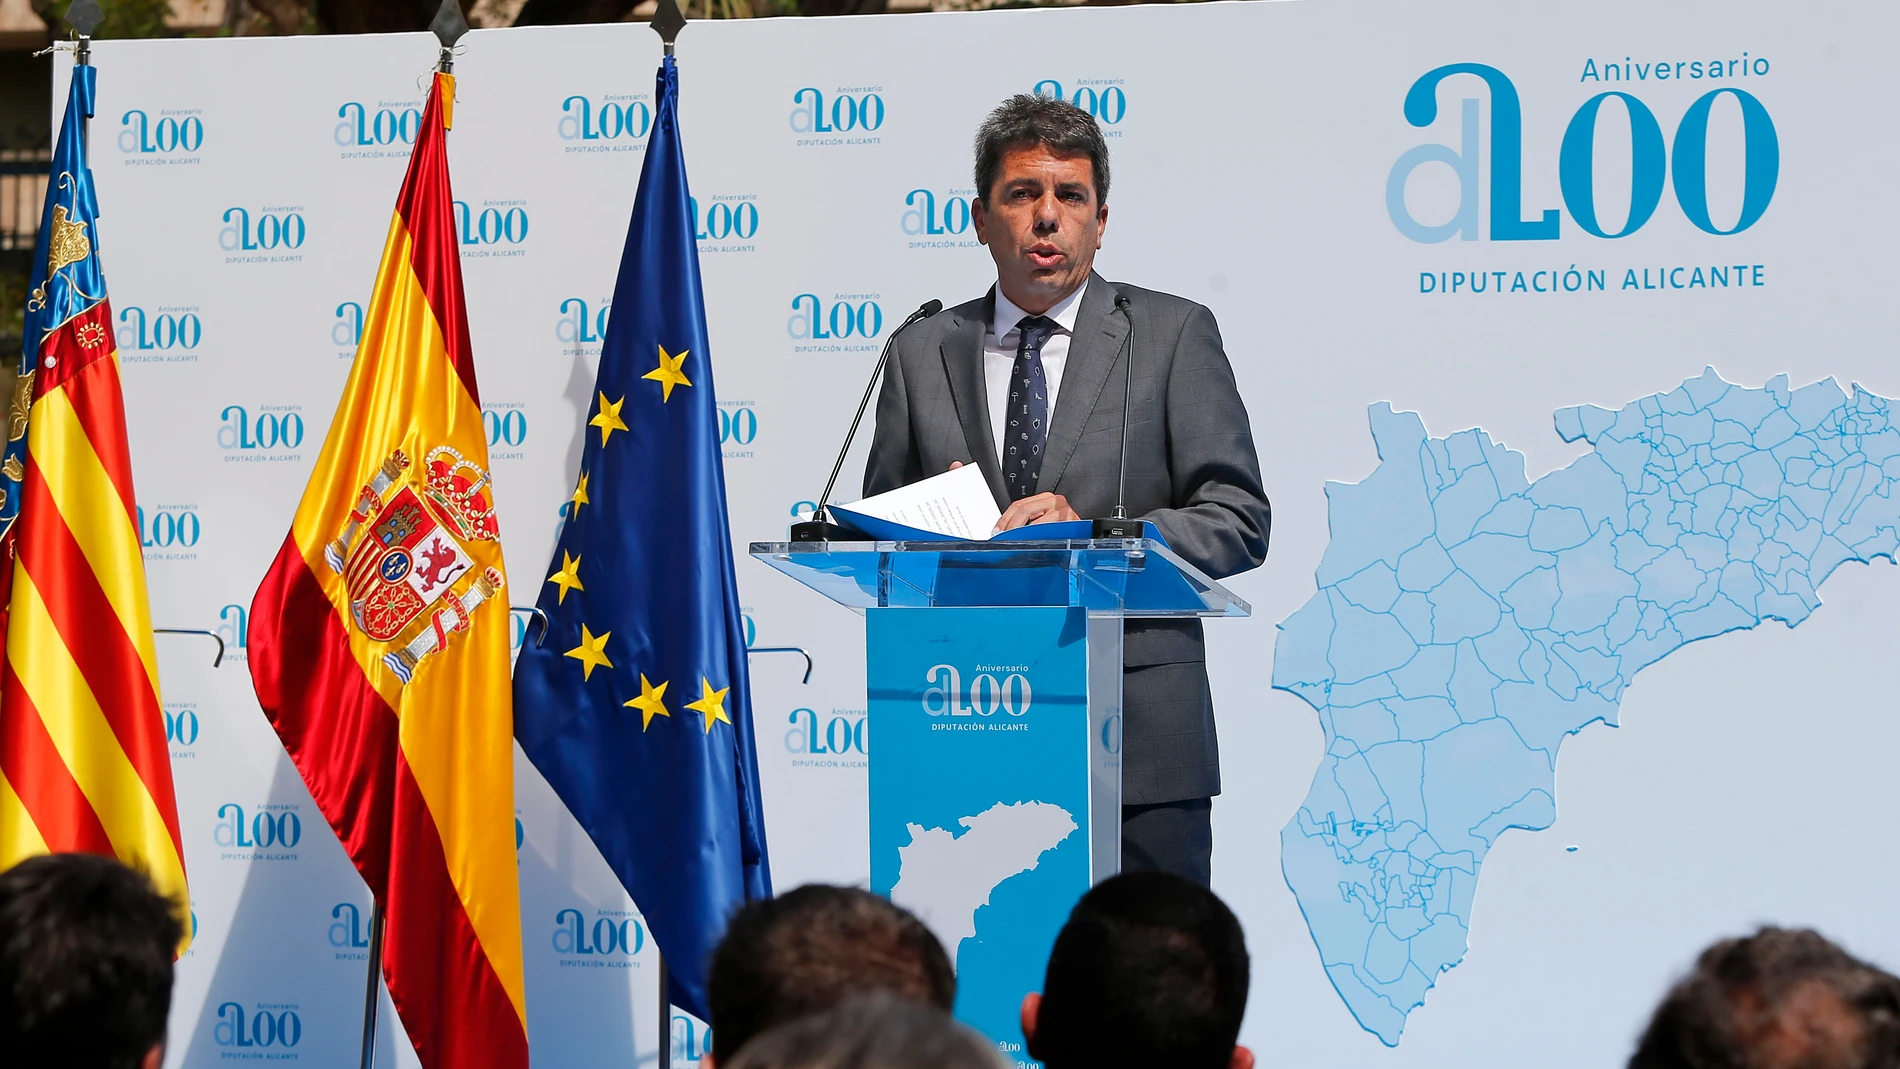 El presidente de la Diputación de Alicante, Carlos Mazón, durante su intervención en el acto por el 200 Aniversario de la Diputación de Alicante.